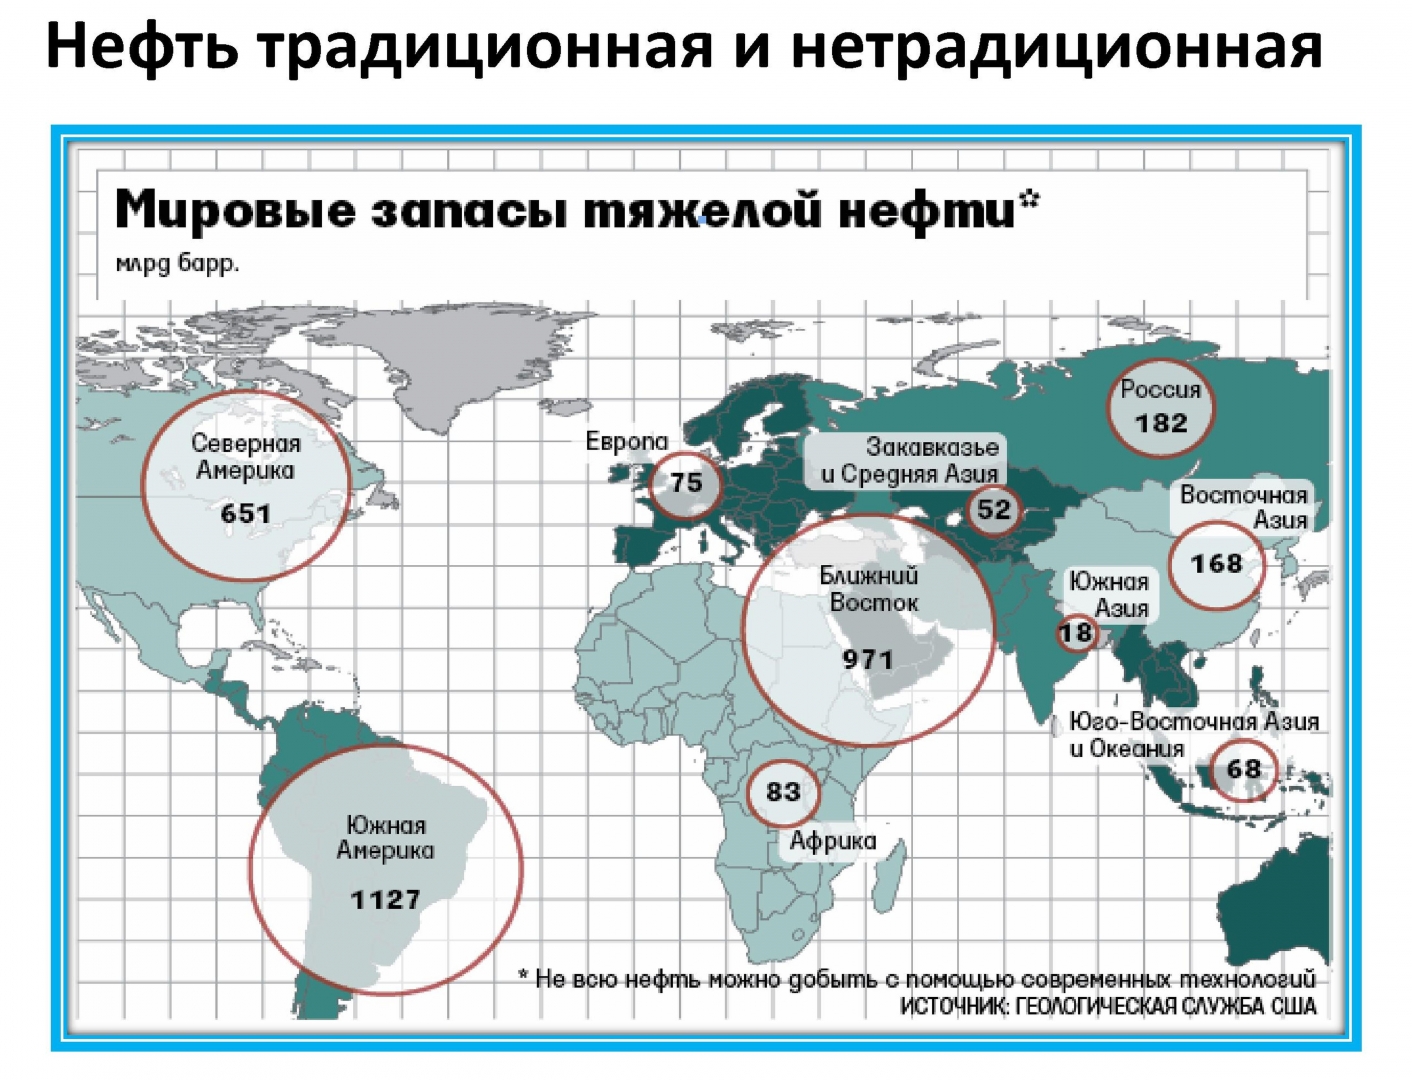 Запасы газа в россии. Карта запасов нефти и газа в мире. Распределение запасов битума и “тяжелой” нефти по странам. Залежи нефти в мире на карте.